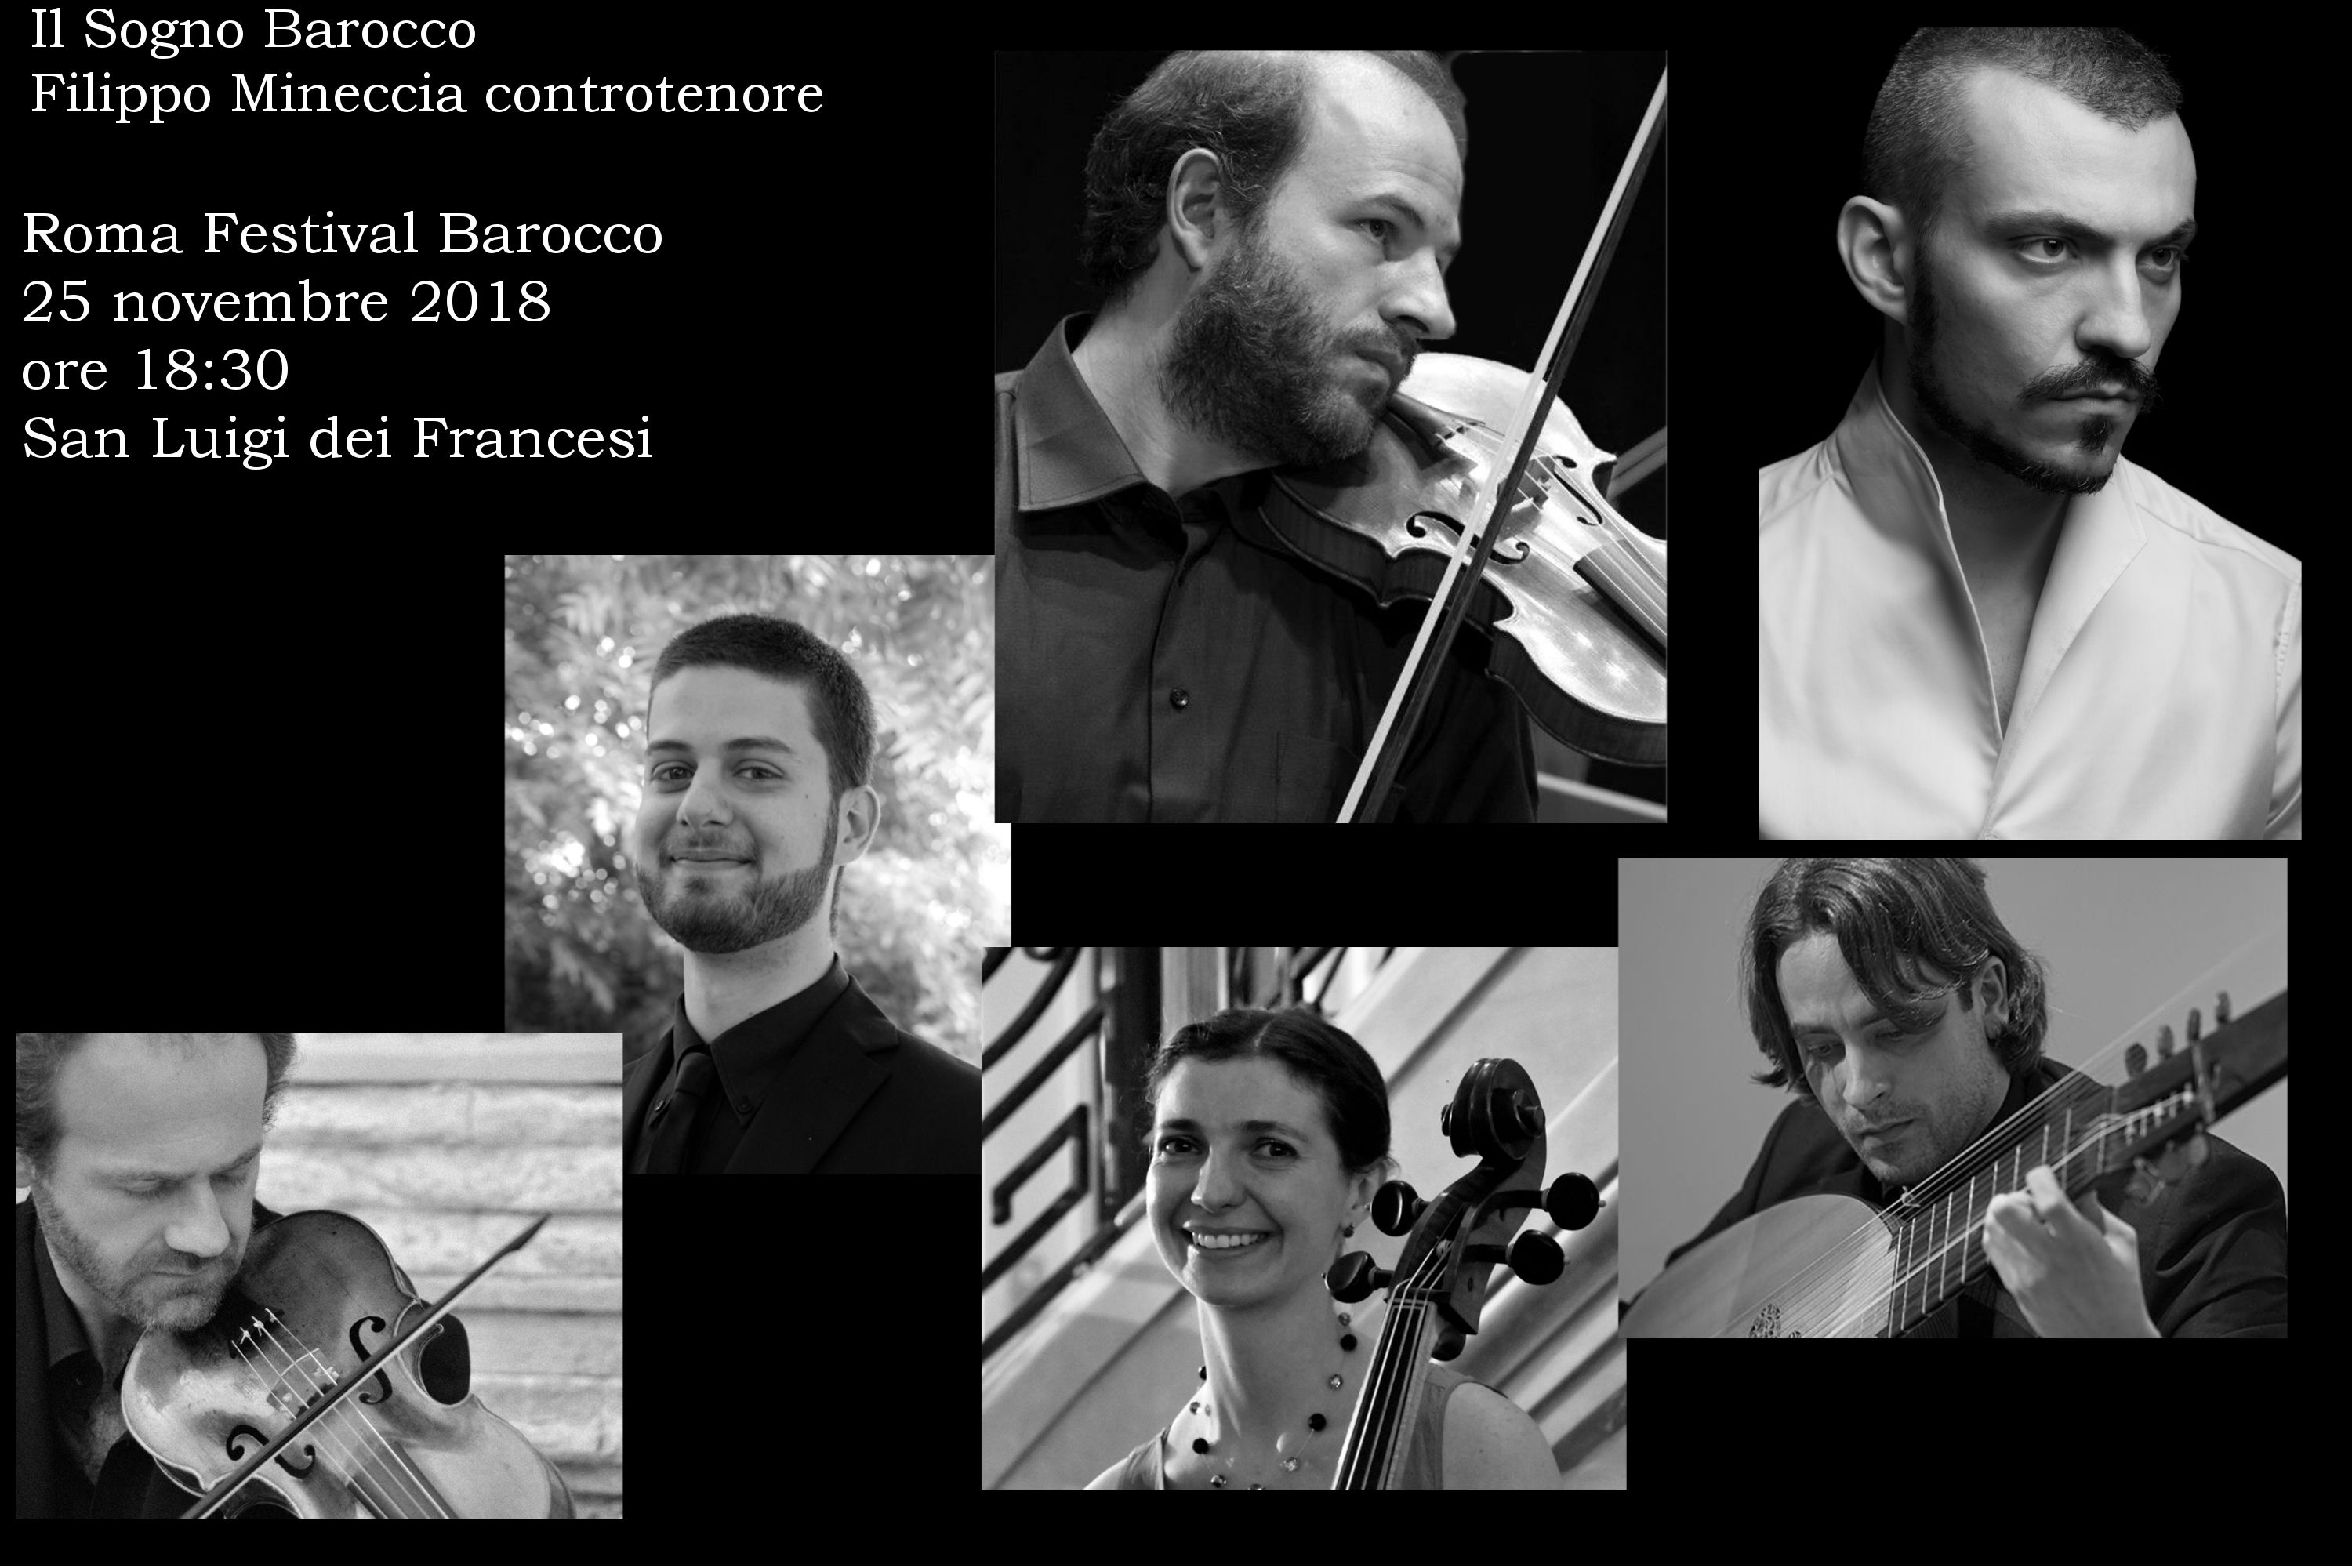 Roma Festival Barocco 2018. Concerto 25 Novembre 2018 - Il Sogno Barocco